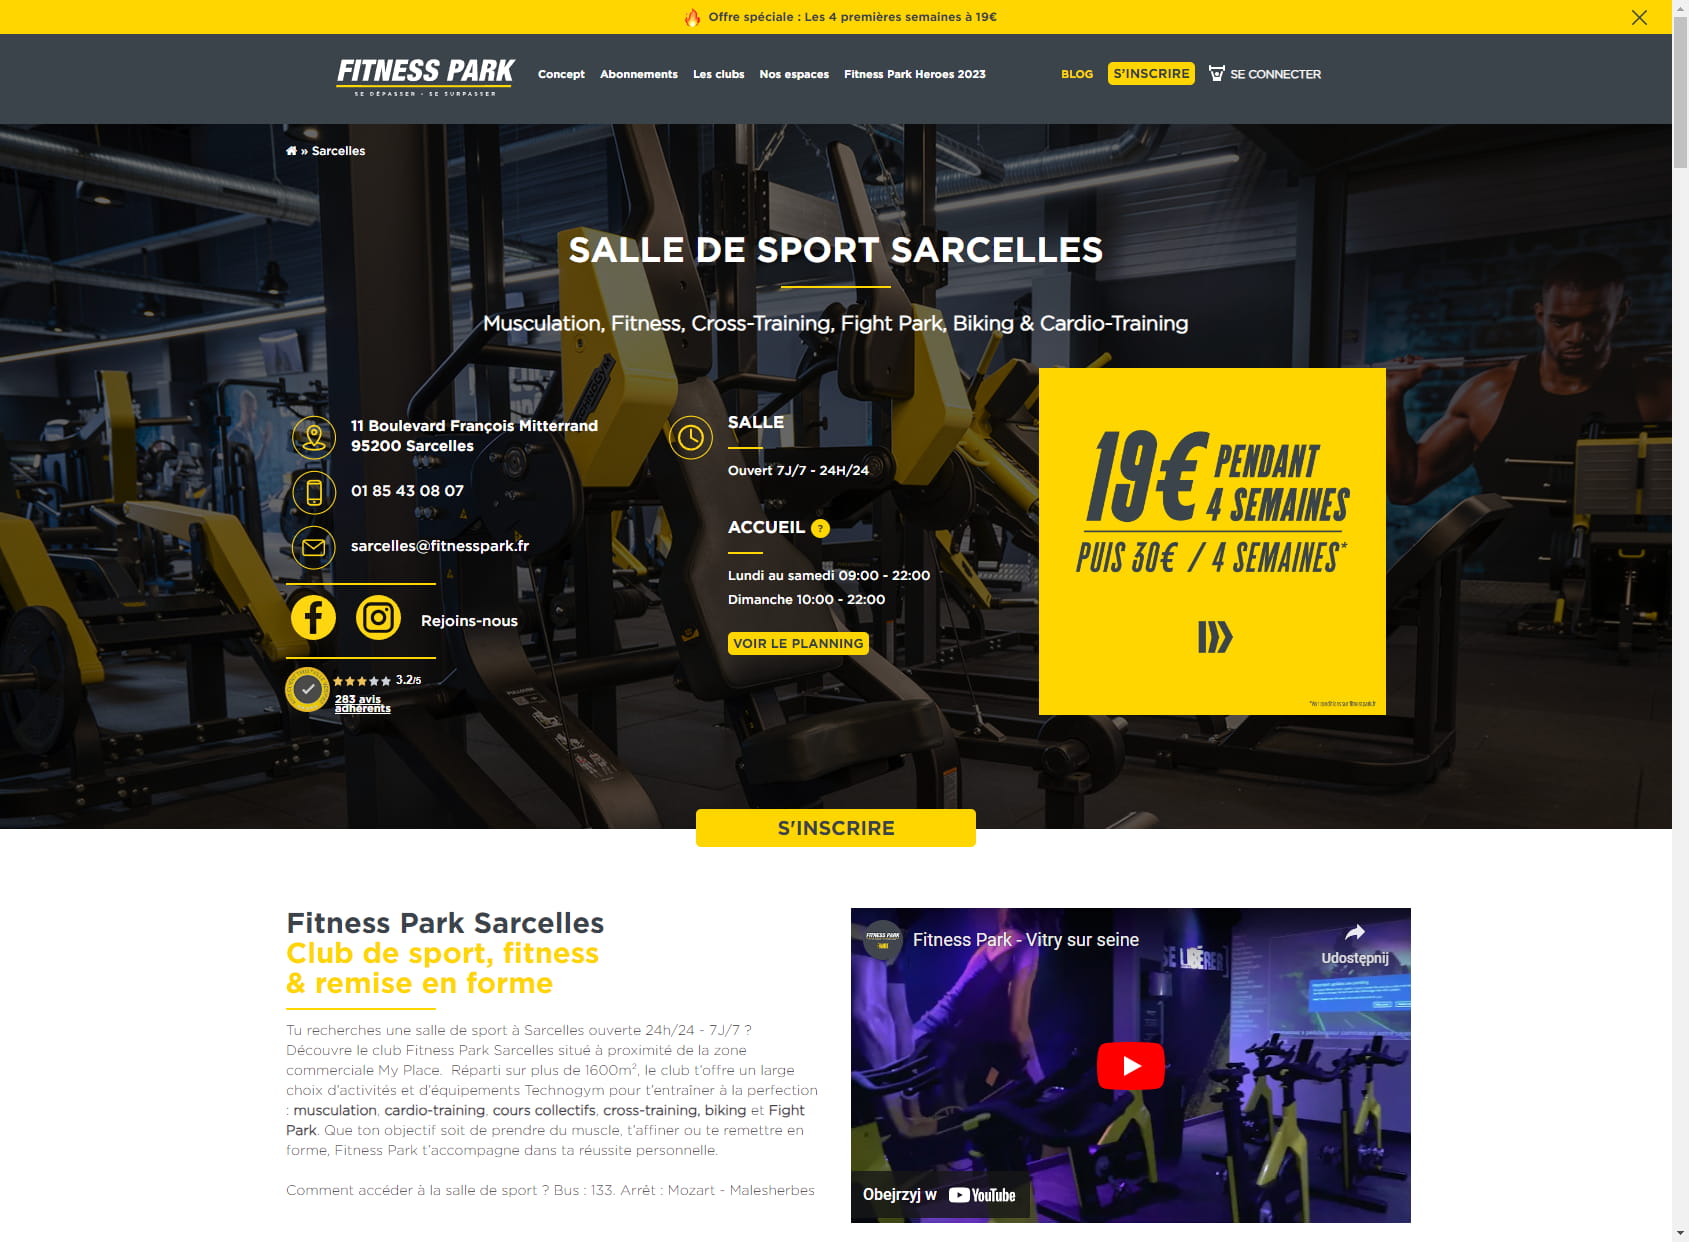 Salle de sport Sarcelles - Fitness Park